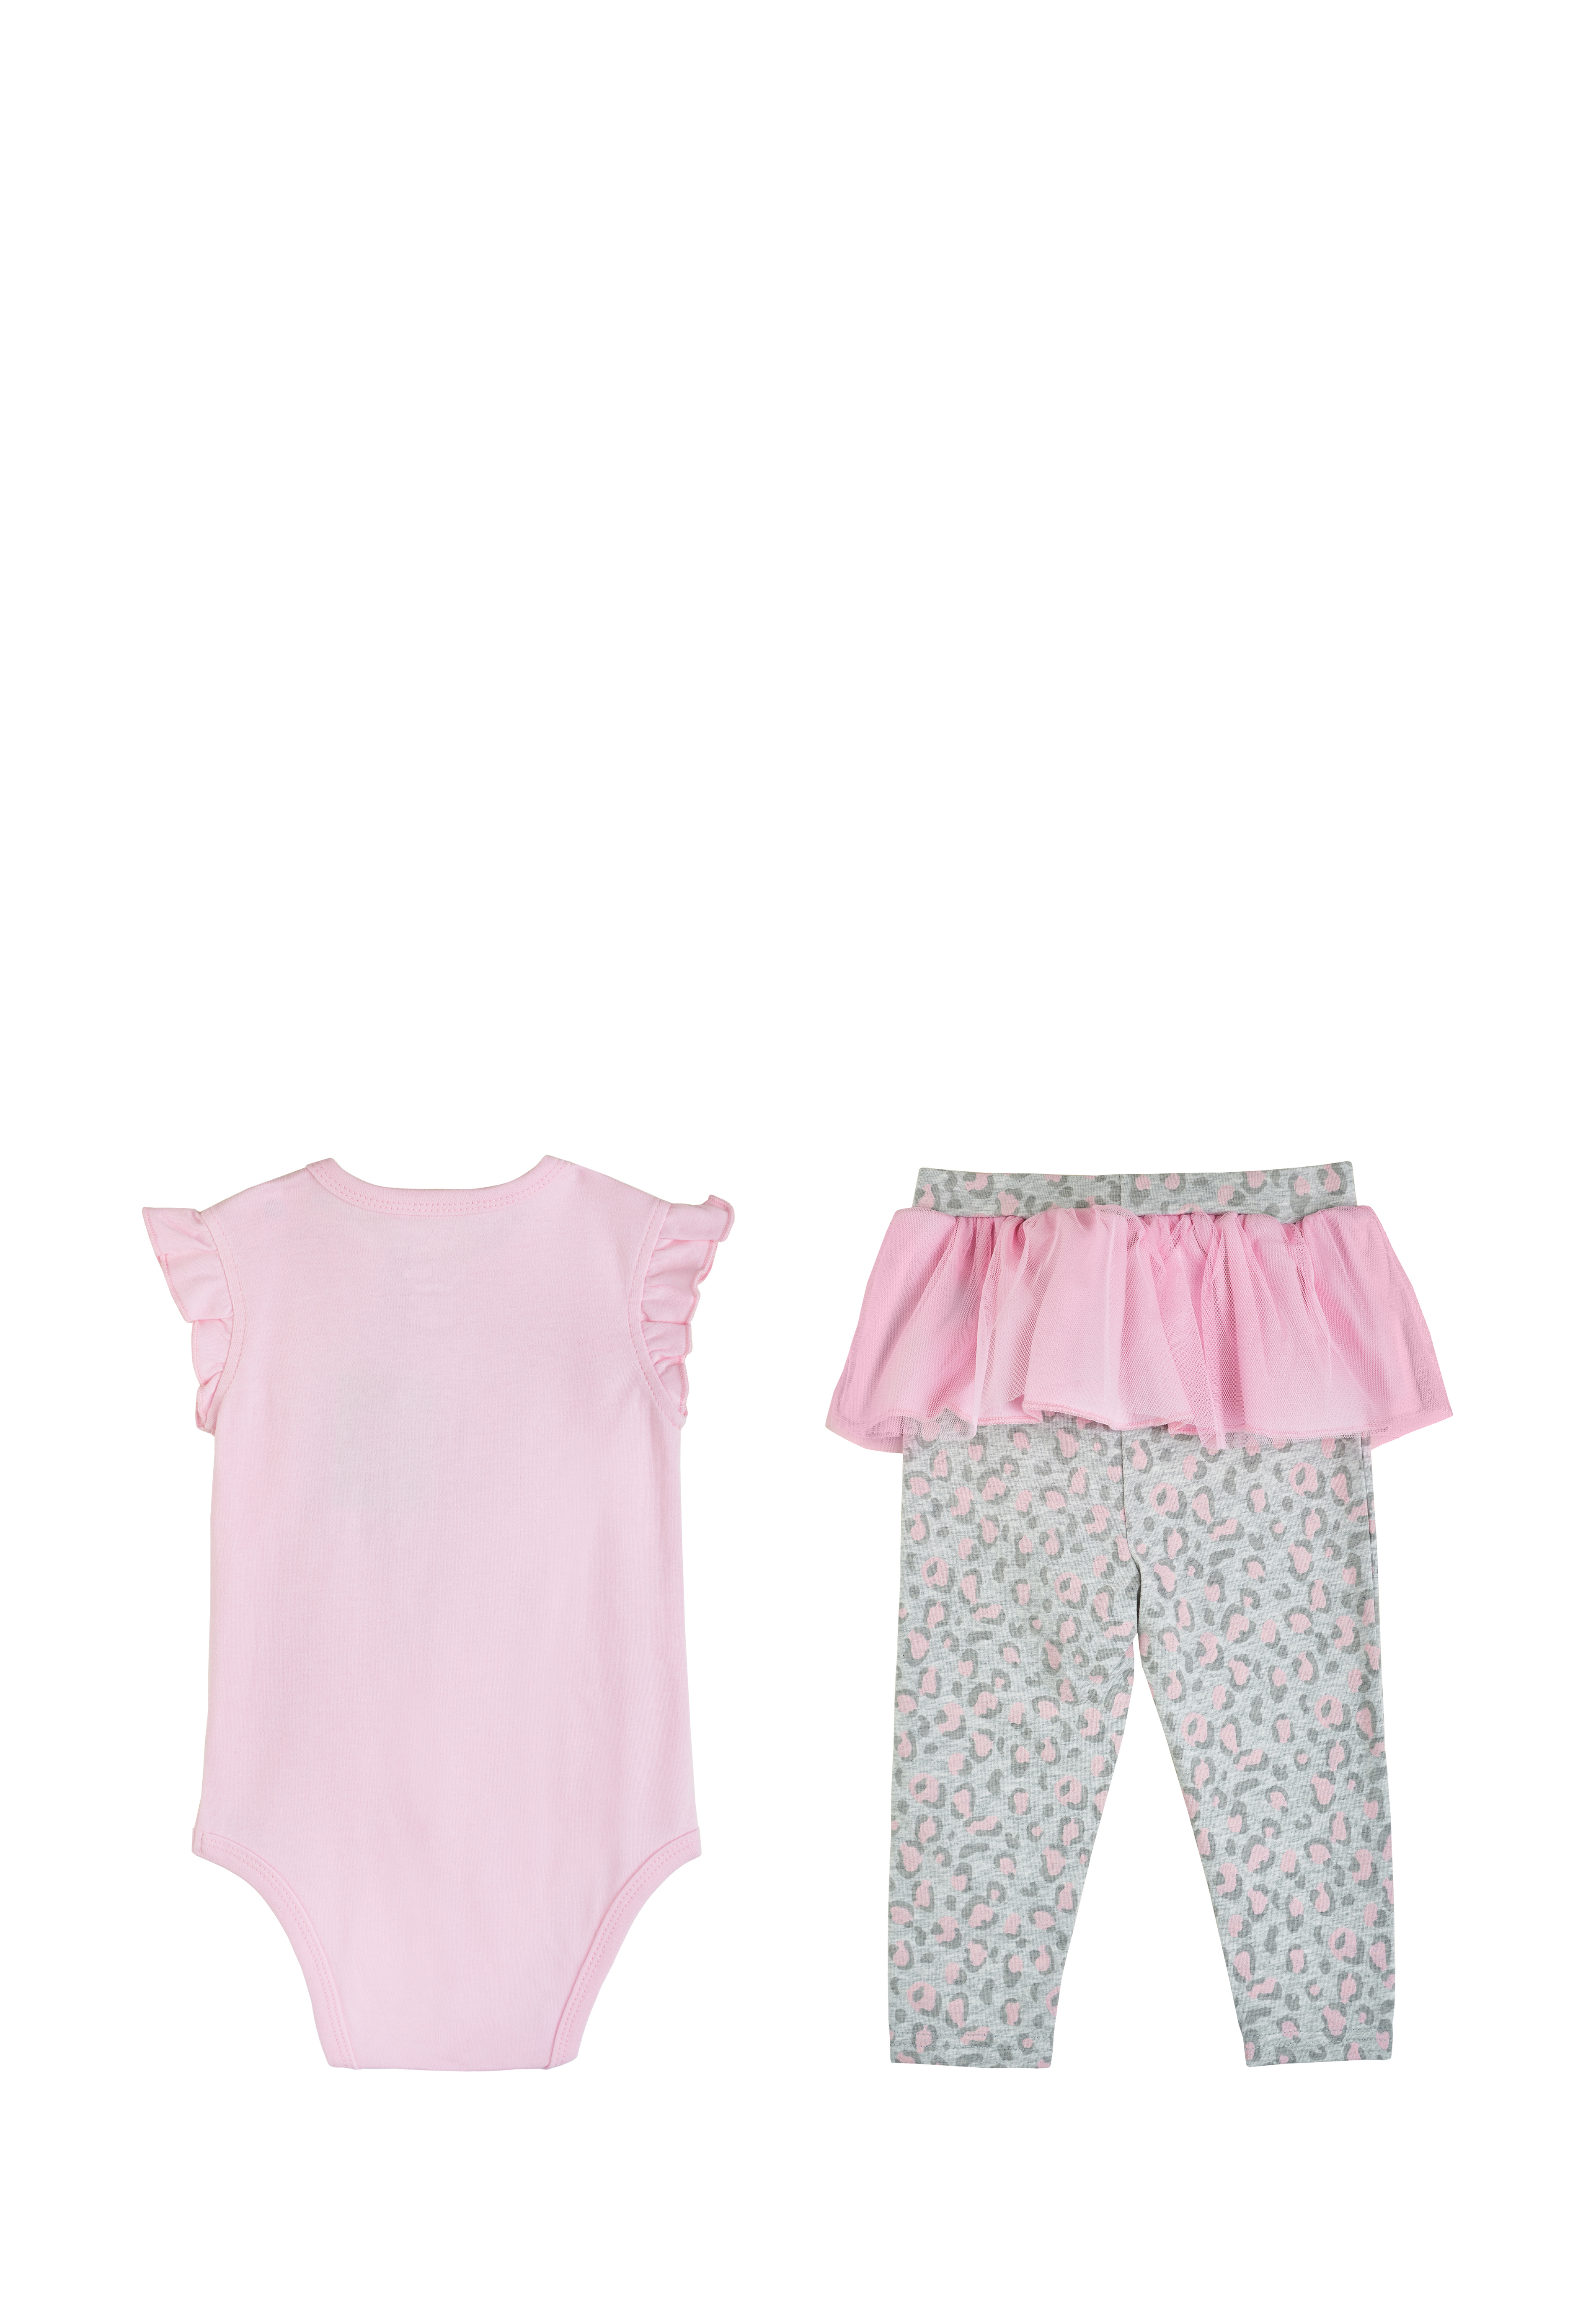 Комплект одежды для маленькой девочки 94400050 вид 7